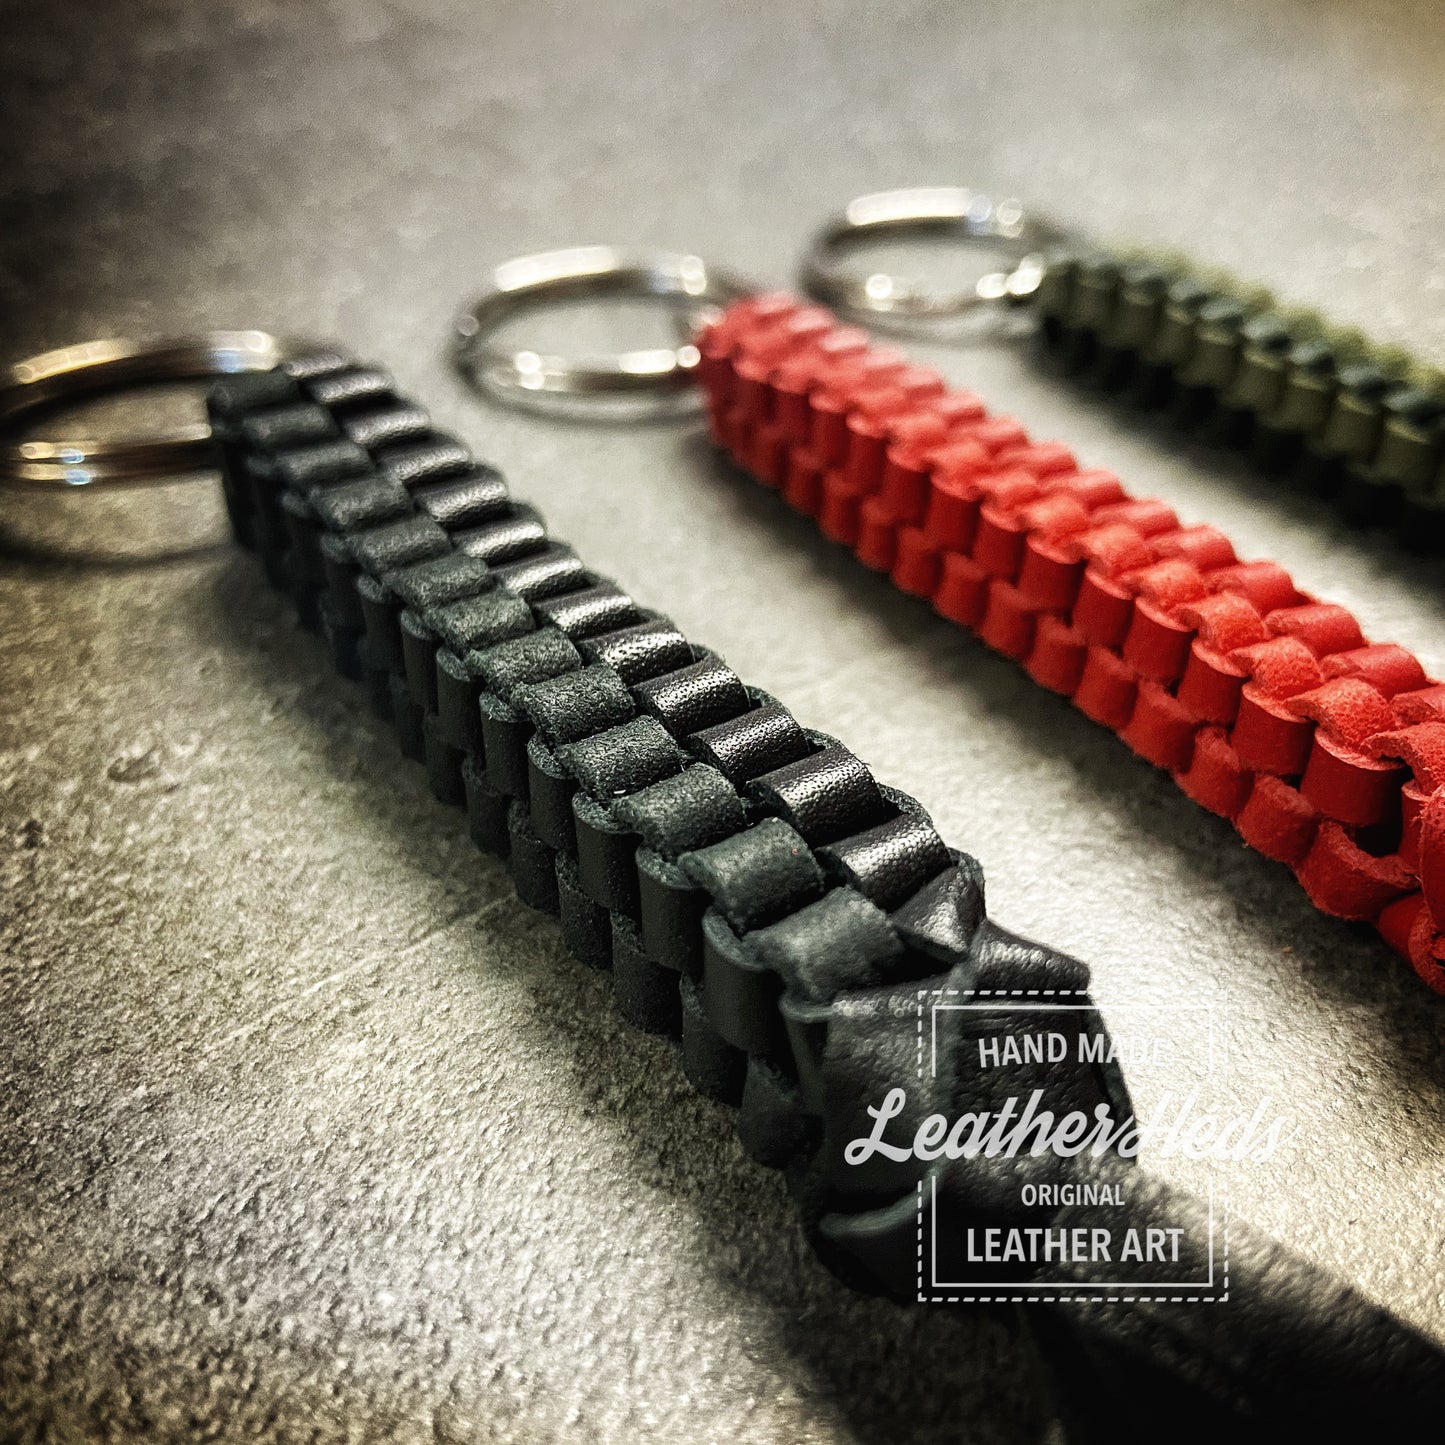 Leather braided key tag